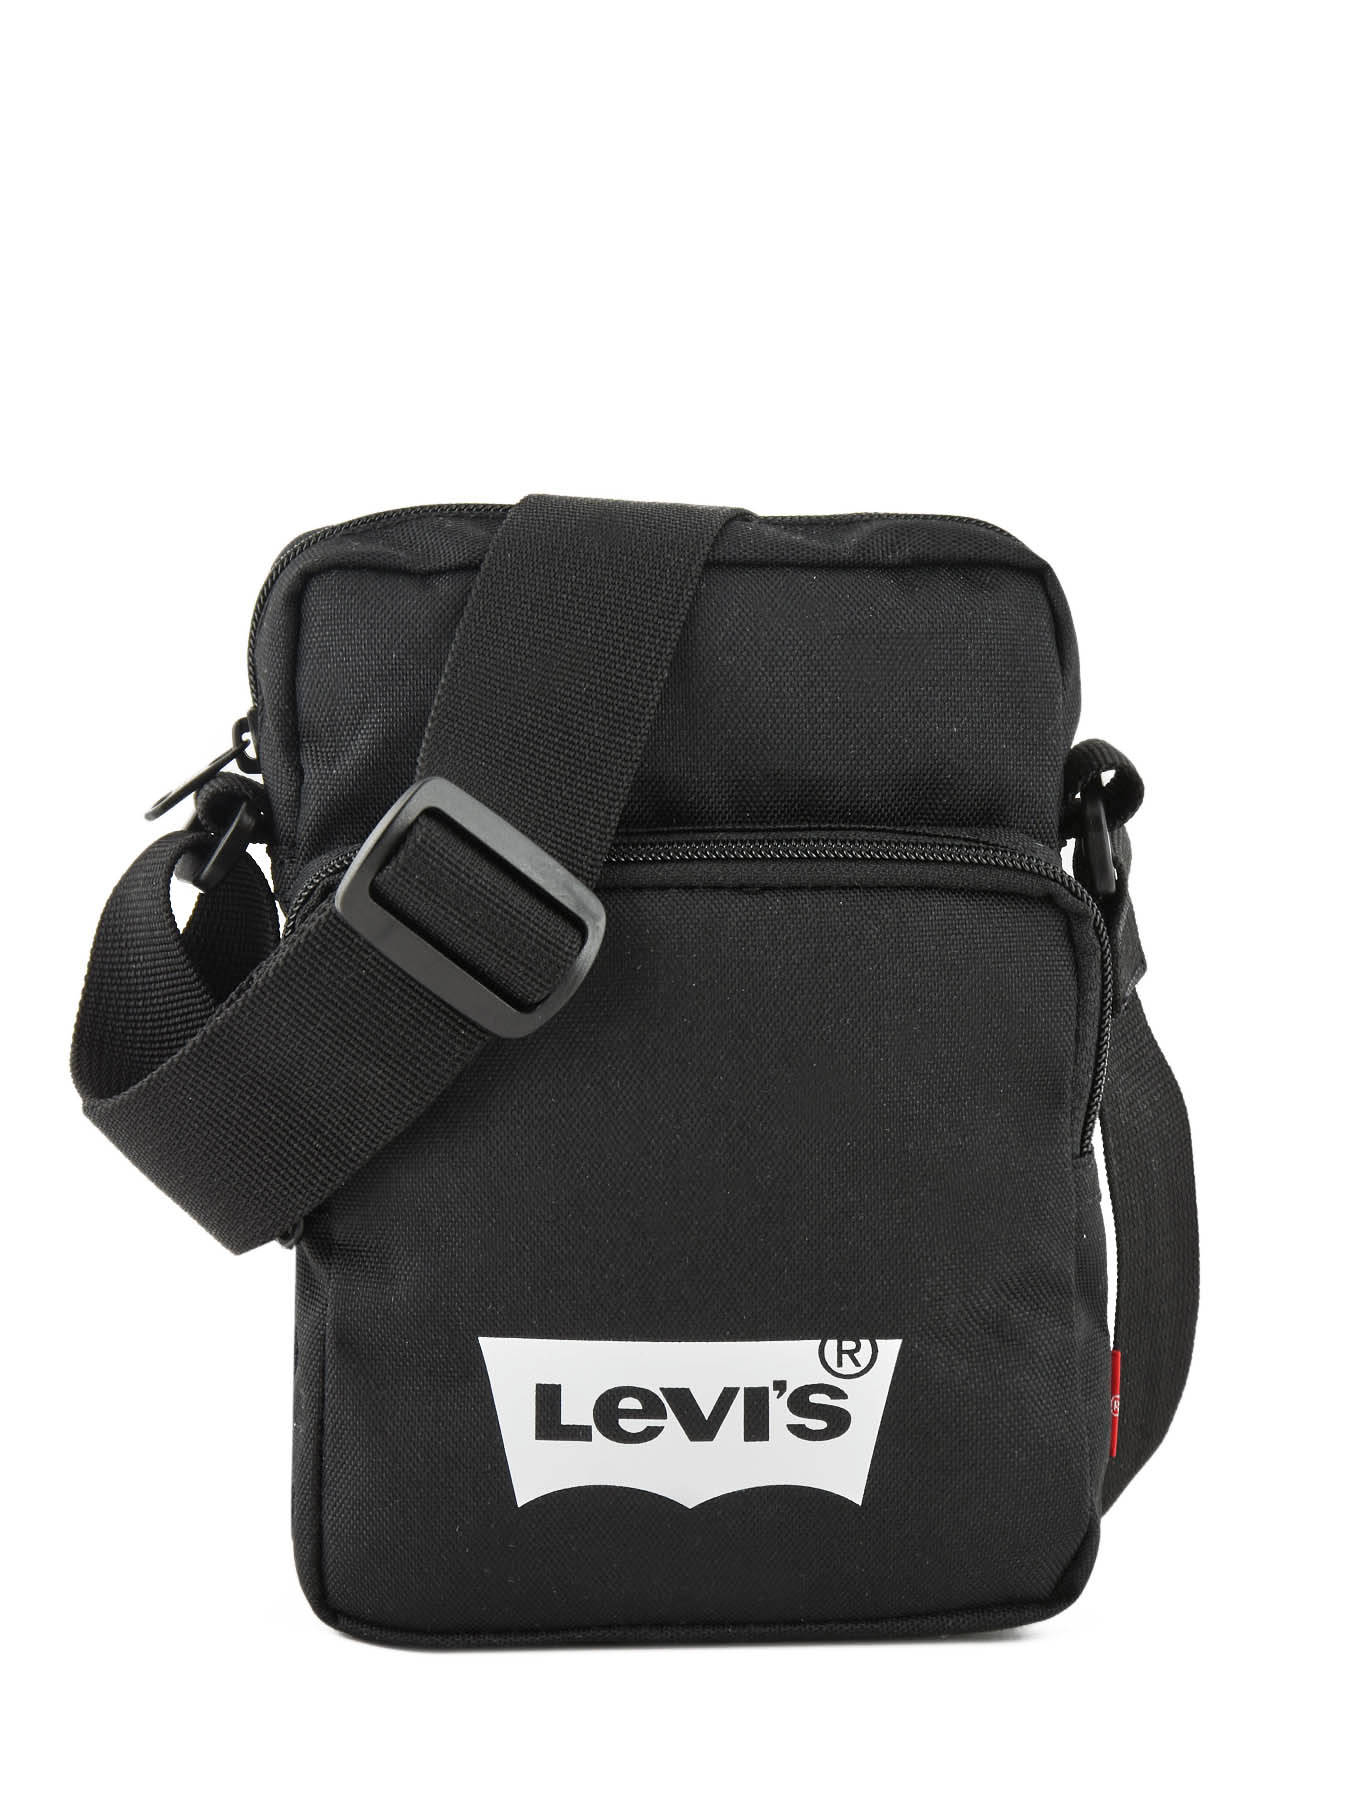 Levi's Crossbody bag 230.149 - best prices